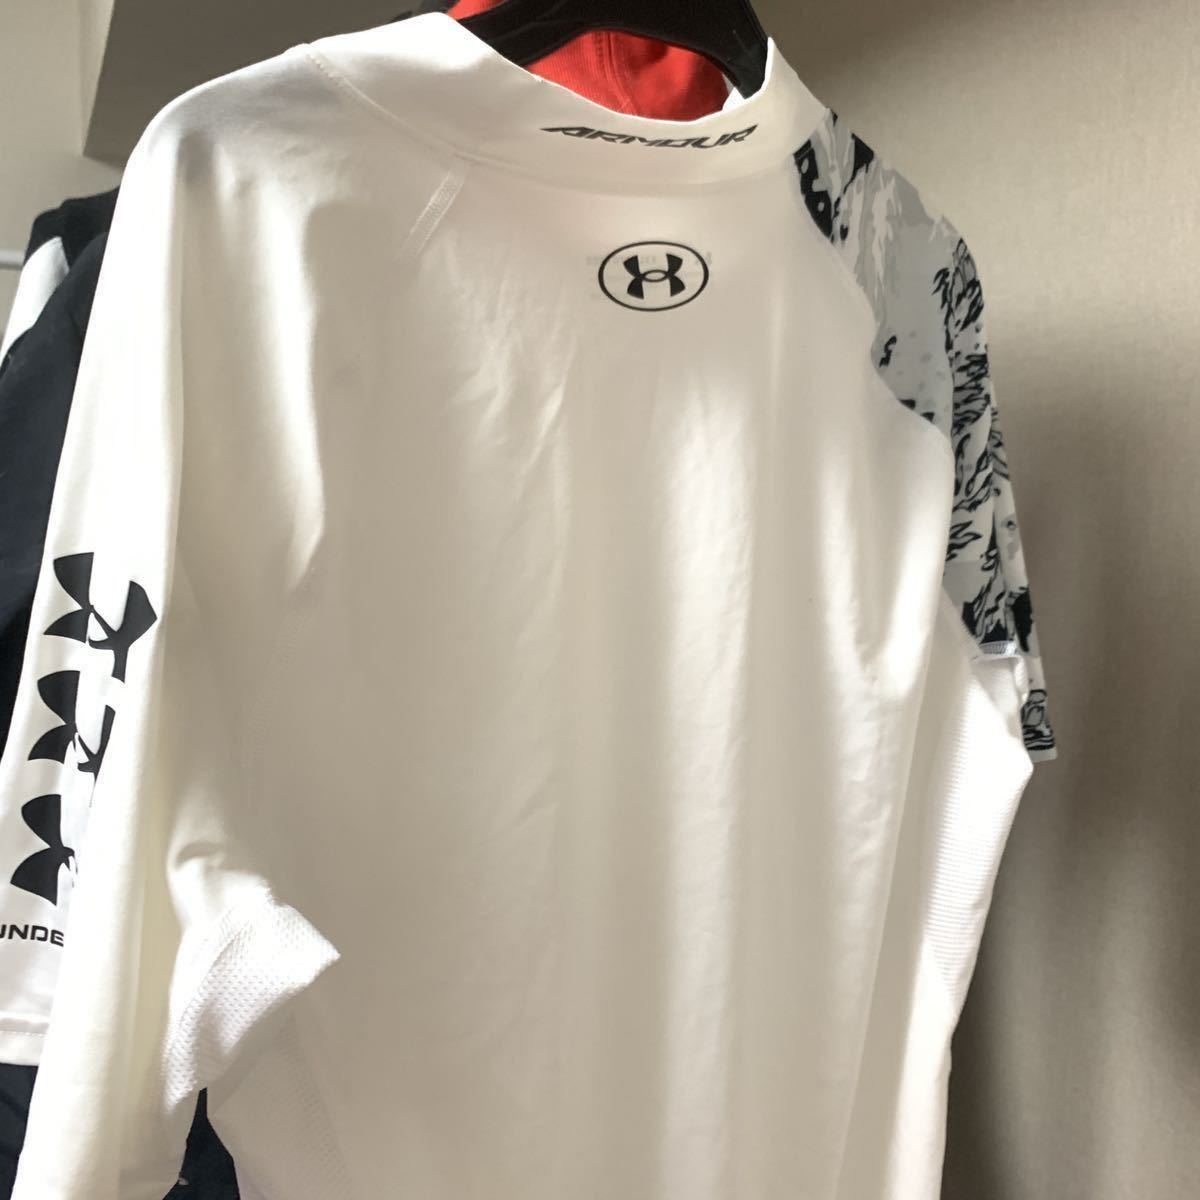 アンダーアーマー 白 XXL コンプレッションウェア(ぴちぴちシャツ、スポーツウェア、ジム、トレーニング)